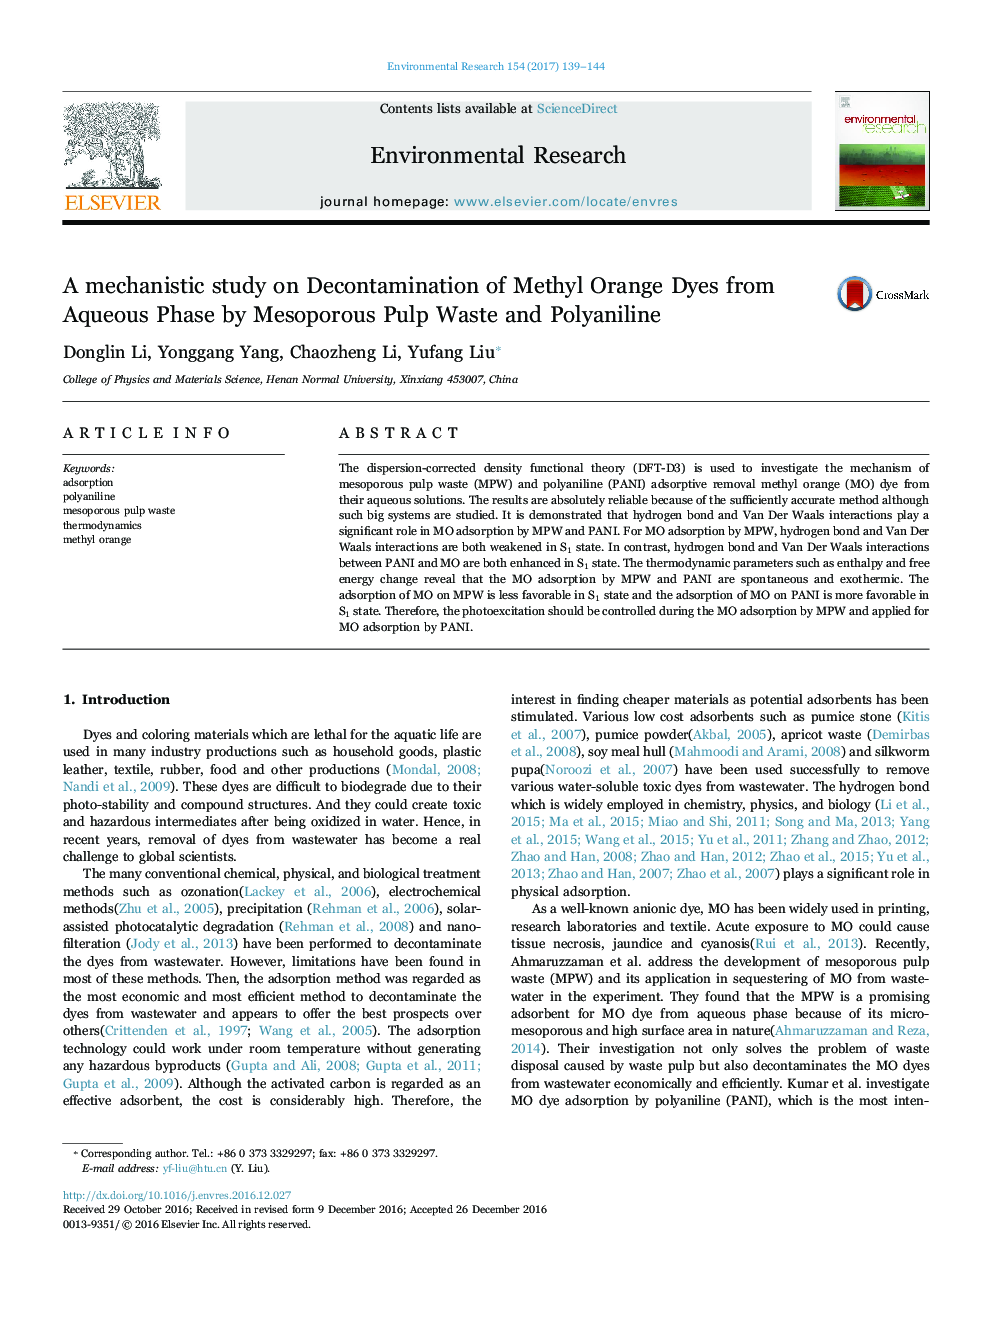 یک مطالعه مکانیکیستی بر روی تصفیه آب متیل نارنجی از فاز آبی توسط زباله های پالسی بین پوزولان و پلیینیلین 